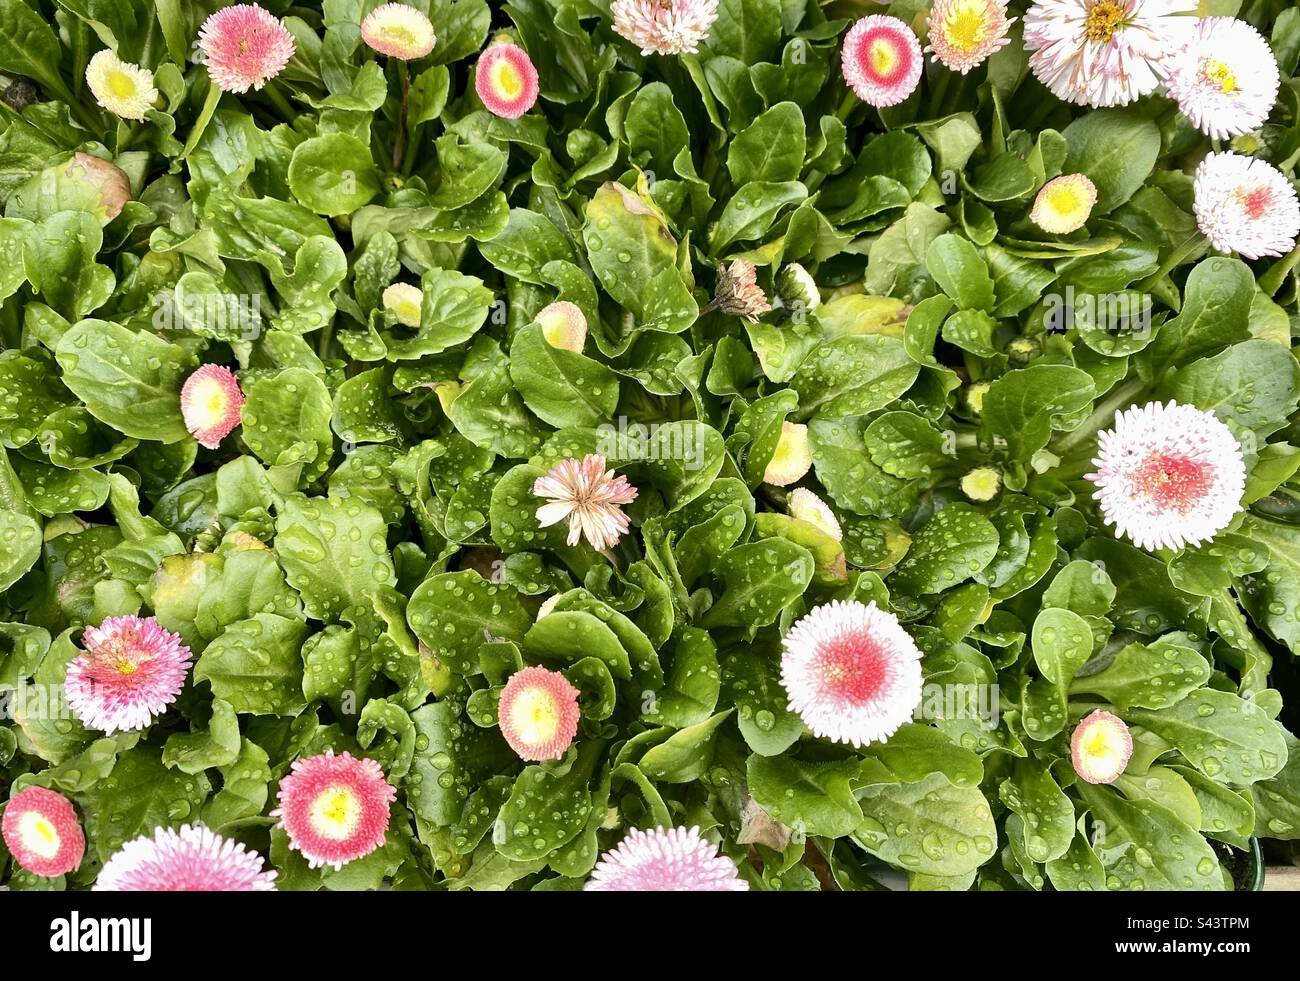 Bellis daisy flowers In bloom Stock Photo